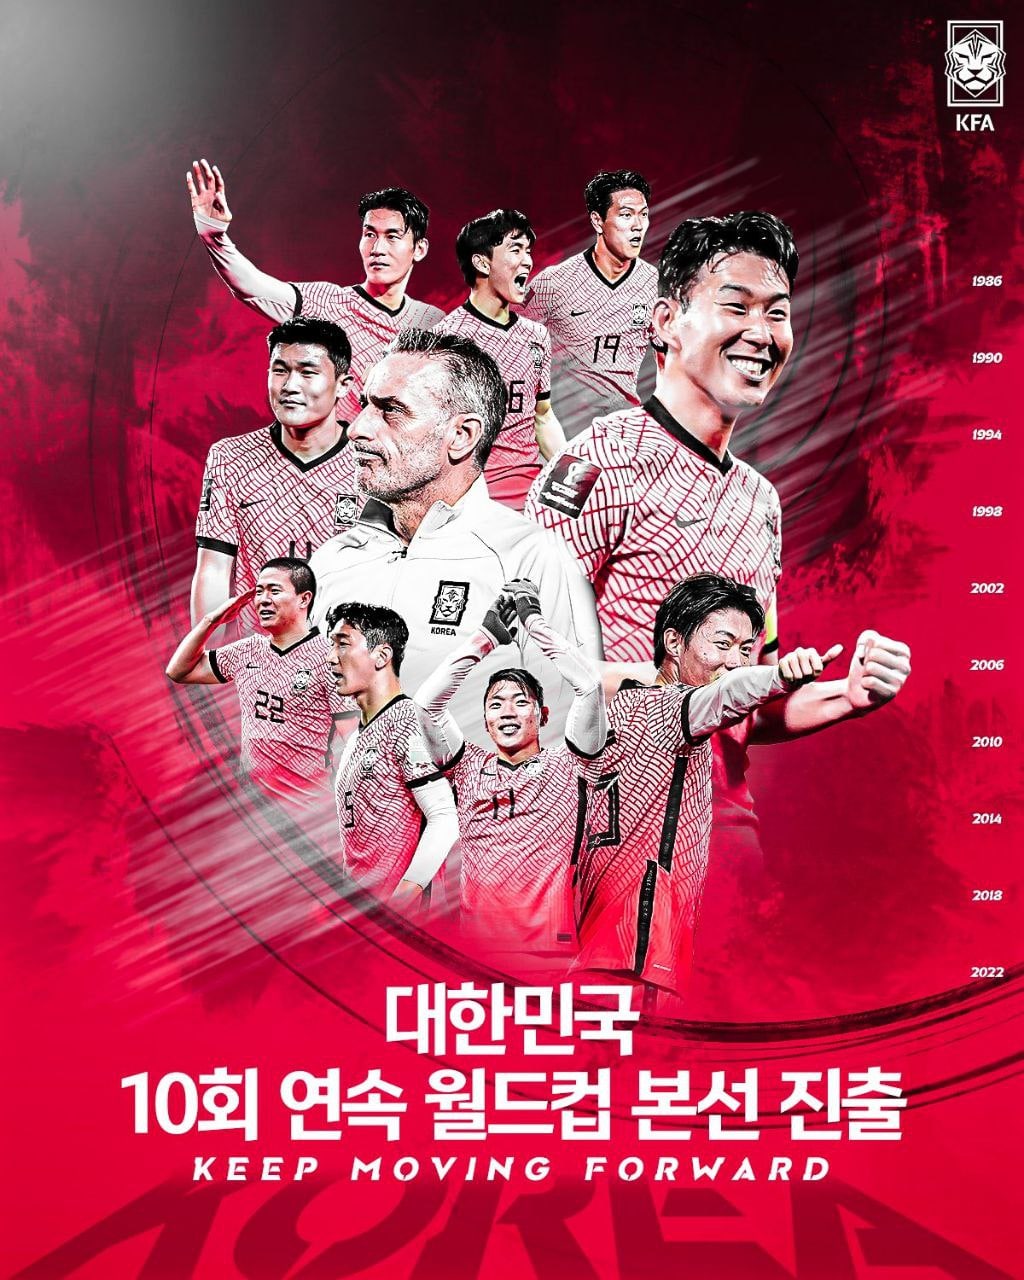 فدراسیون فوتبال کره جنوبی پاداش فردی برای بازیکنان خود در نظر گرفته است1